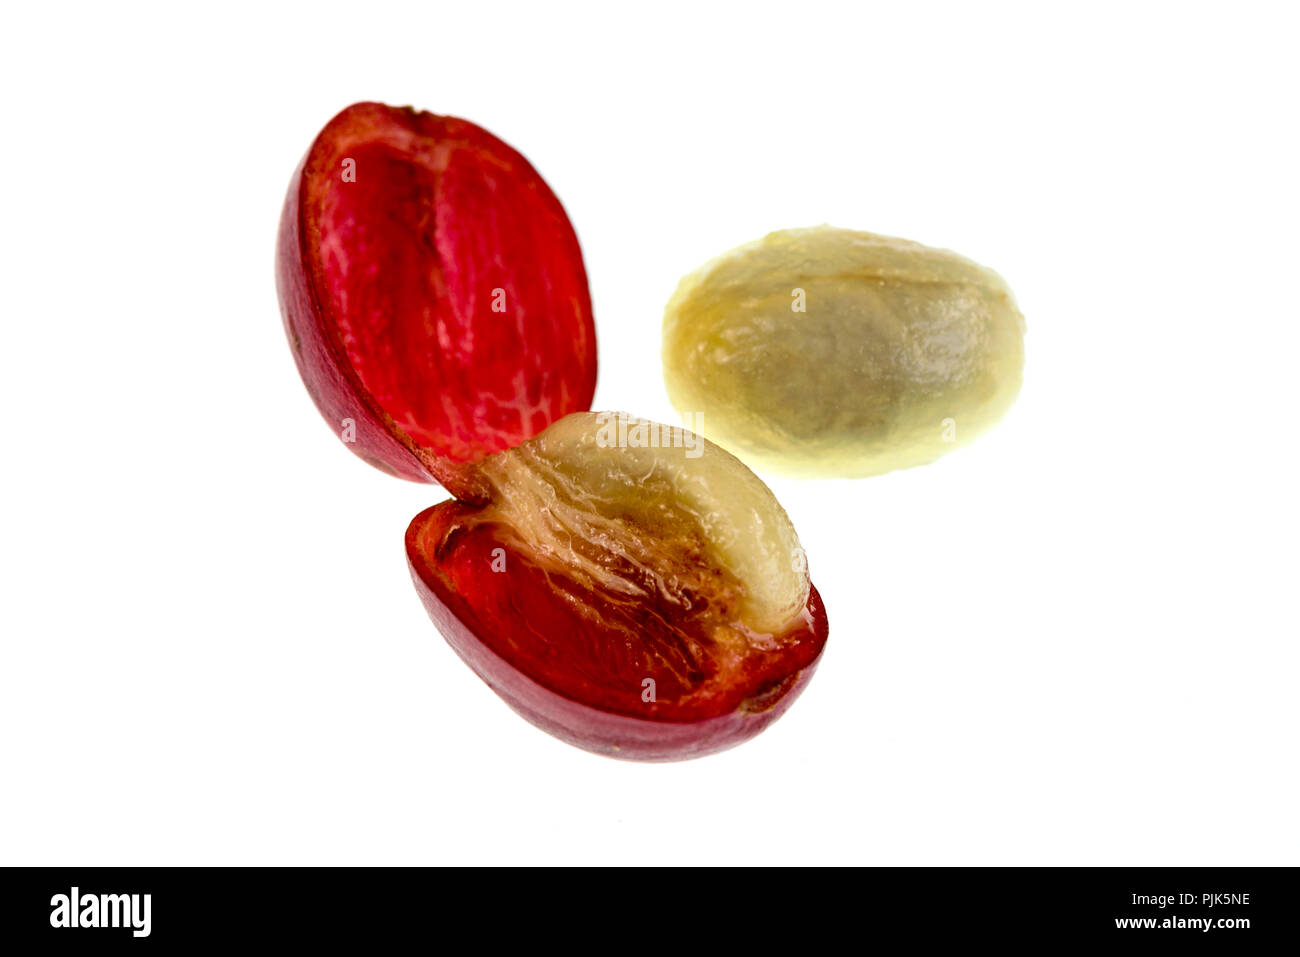 Blick auf einen frischen Kaffee kirsche frucht Anatomie mit den äußeren Abschnitt aus der Haut und Zellstoff, in Rot im Bild und den inneren Abschnitt oder Saatgut w Stockfoto